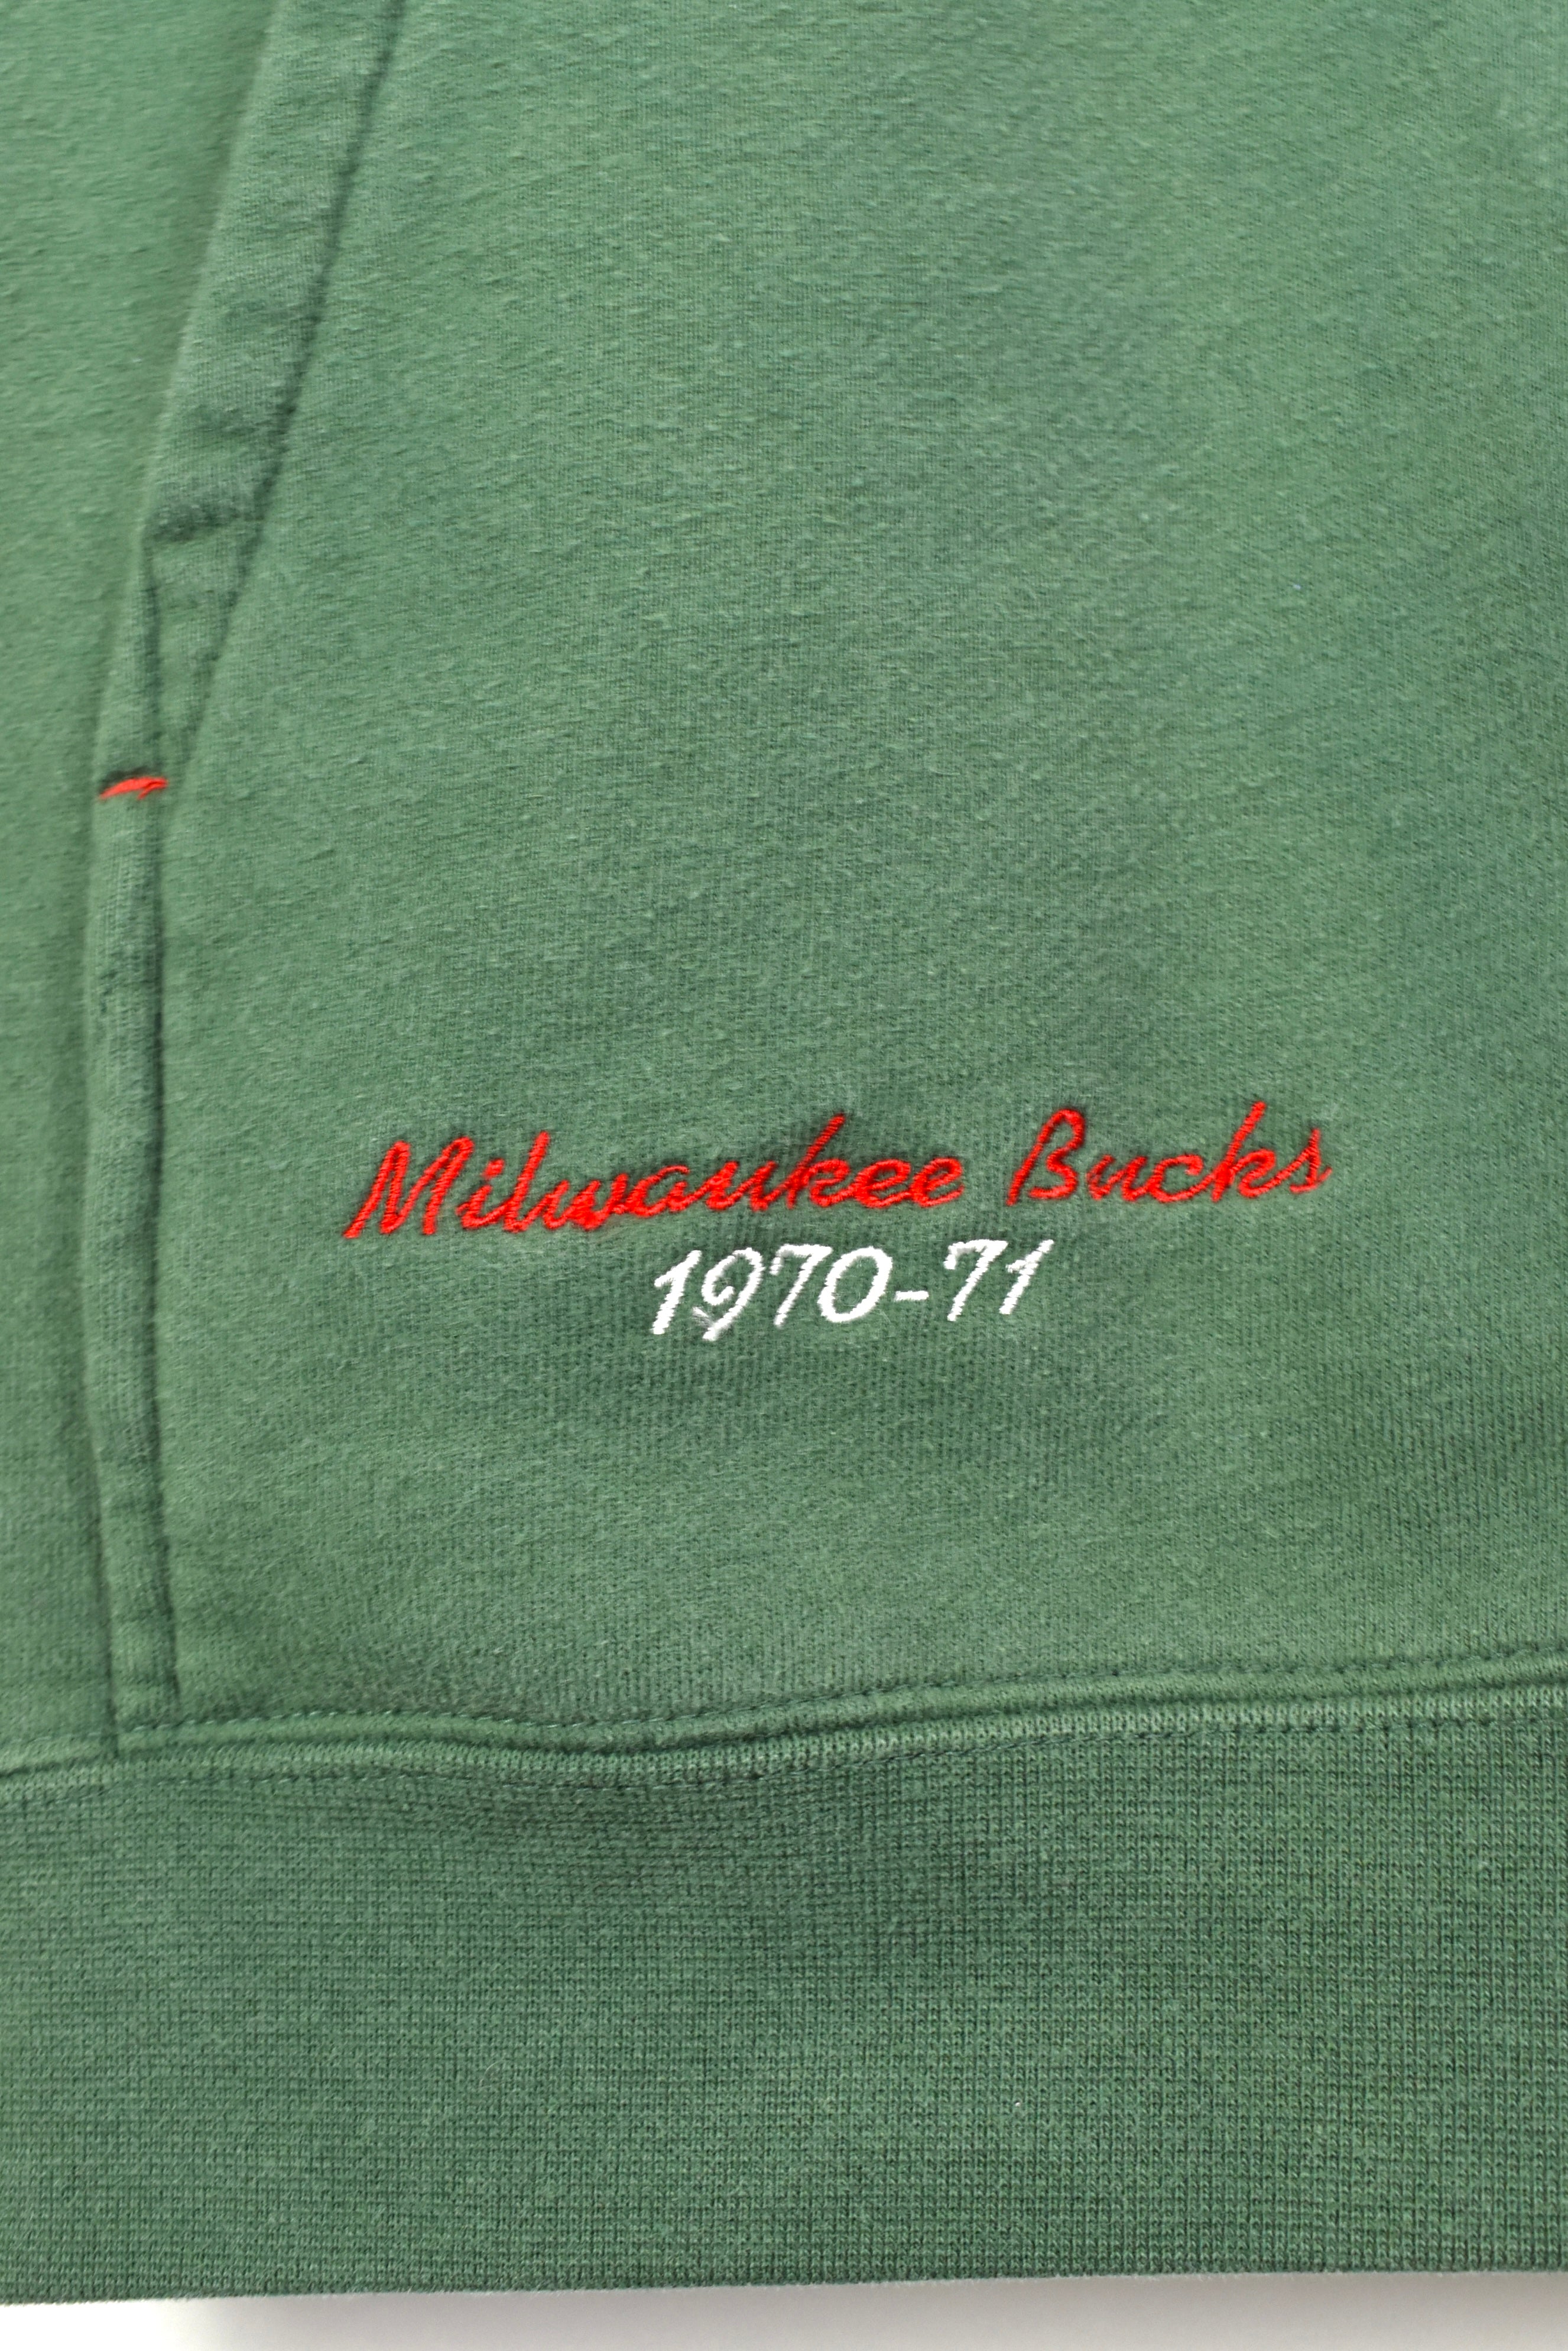 Vintage Milwaukee Bucks hoodie, NBA embroidered sweatshirt - large, green PRO SPORT